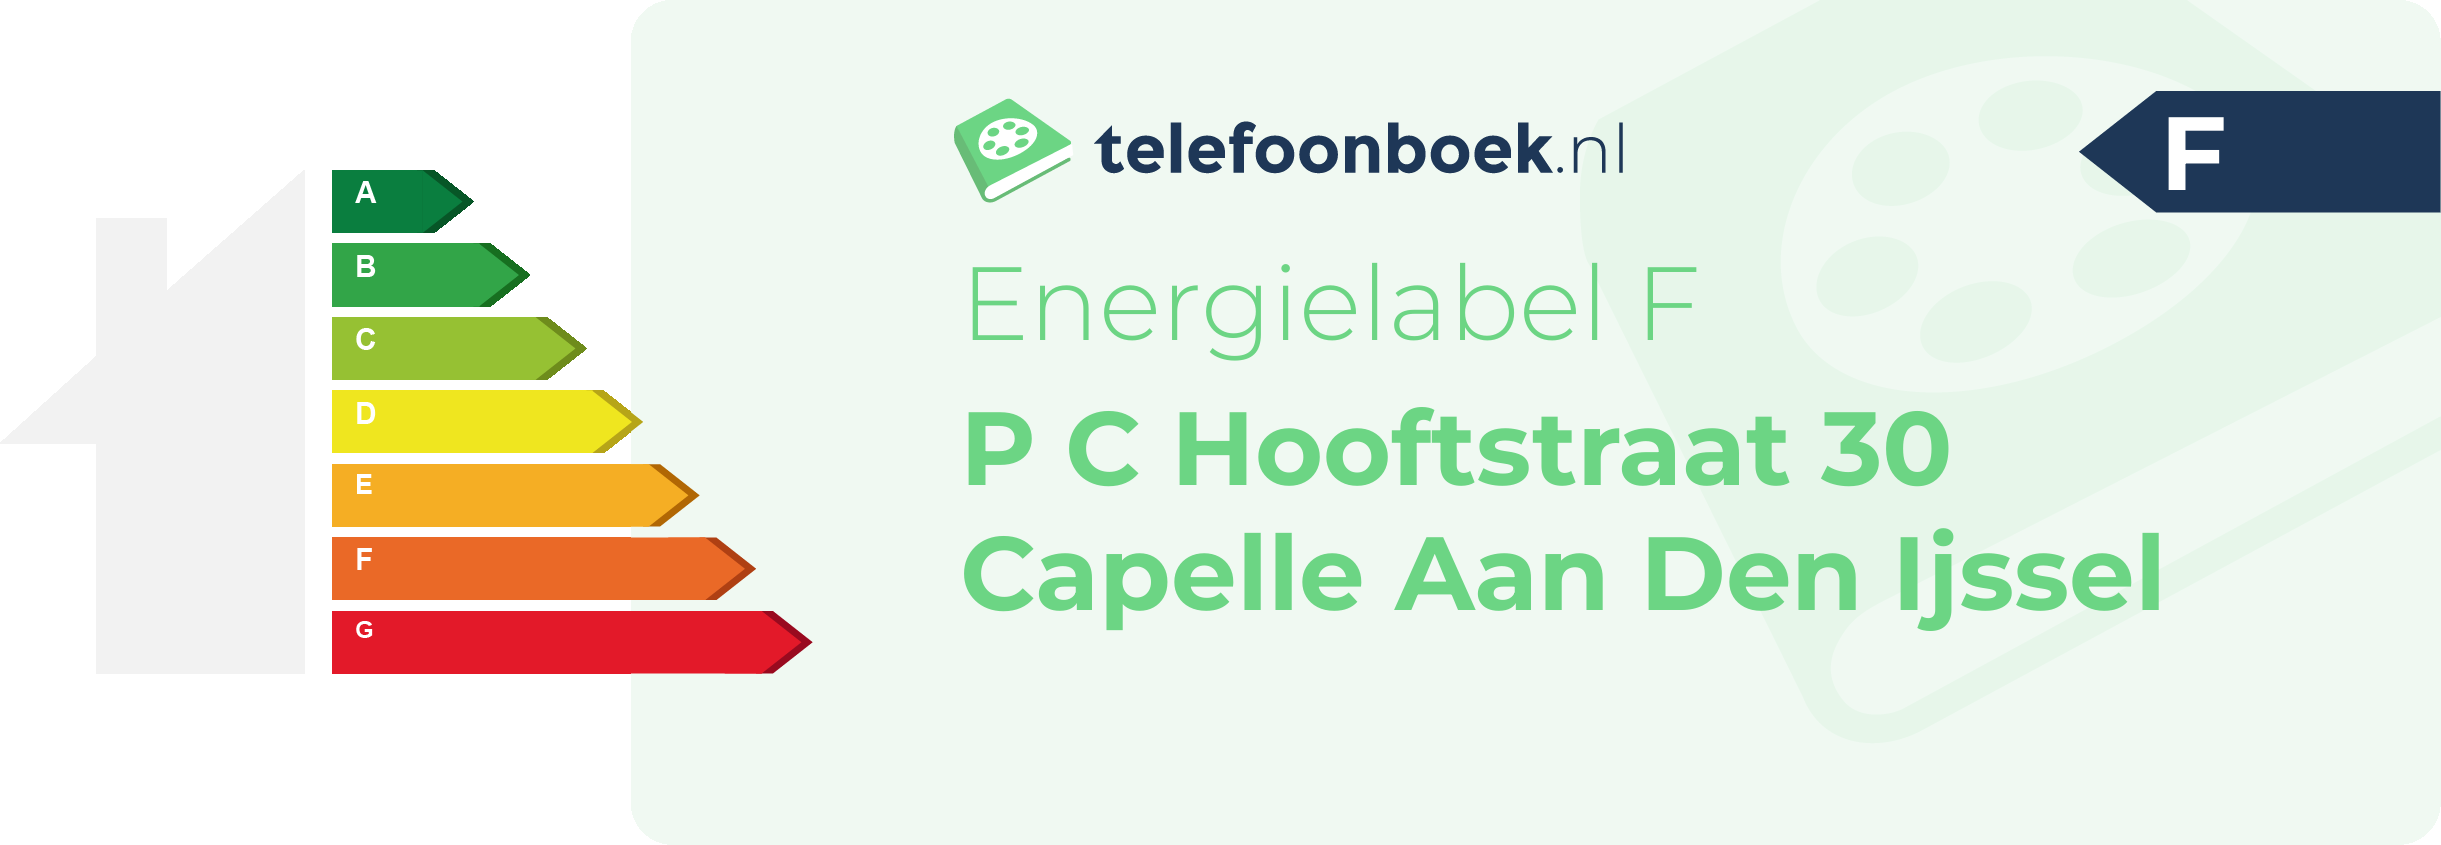 Energielabel P C Hooftstraat 30 Capelle Aan Den Ijssel